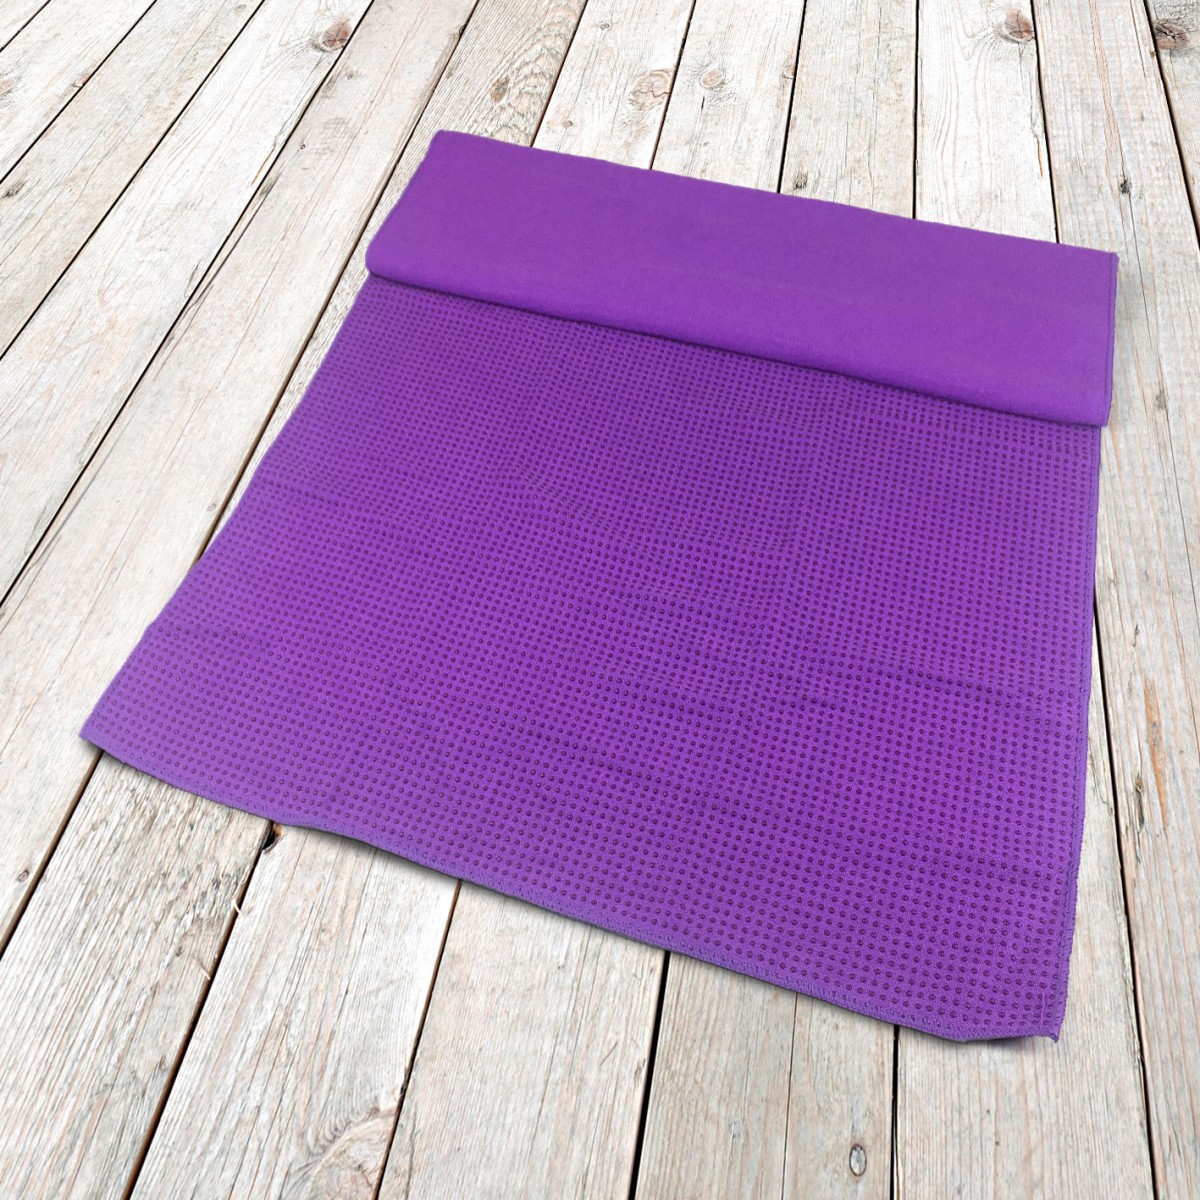 Toalla de yoga con agarre pegajoso-Mejor toalla antideslizante para yoga  caliente gris con acabado púrpura nueva